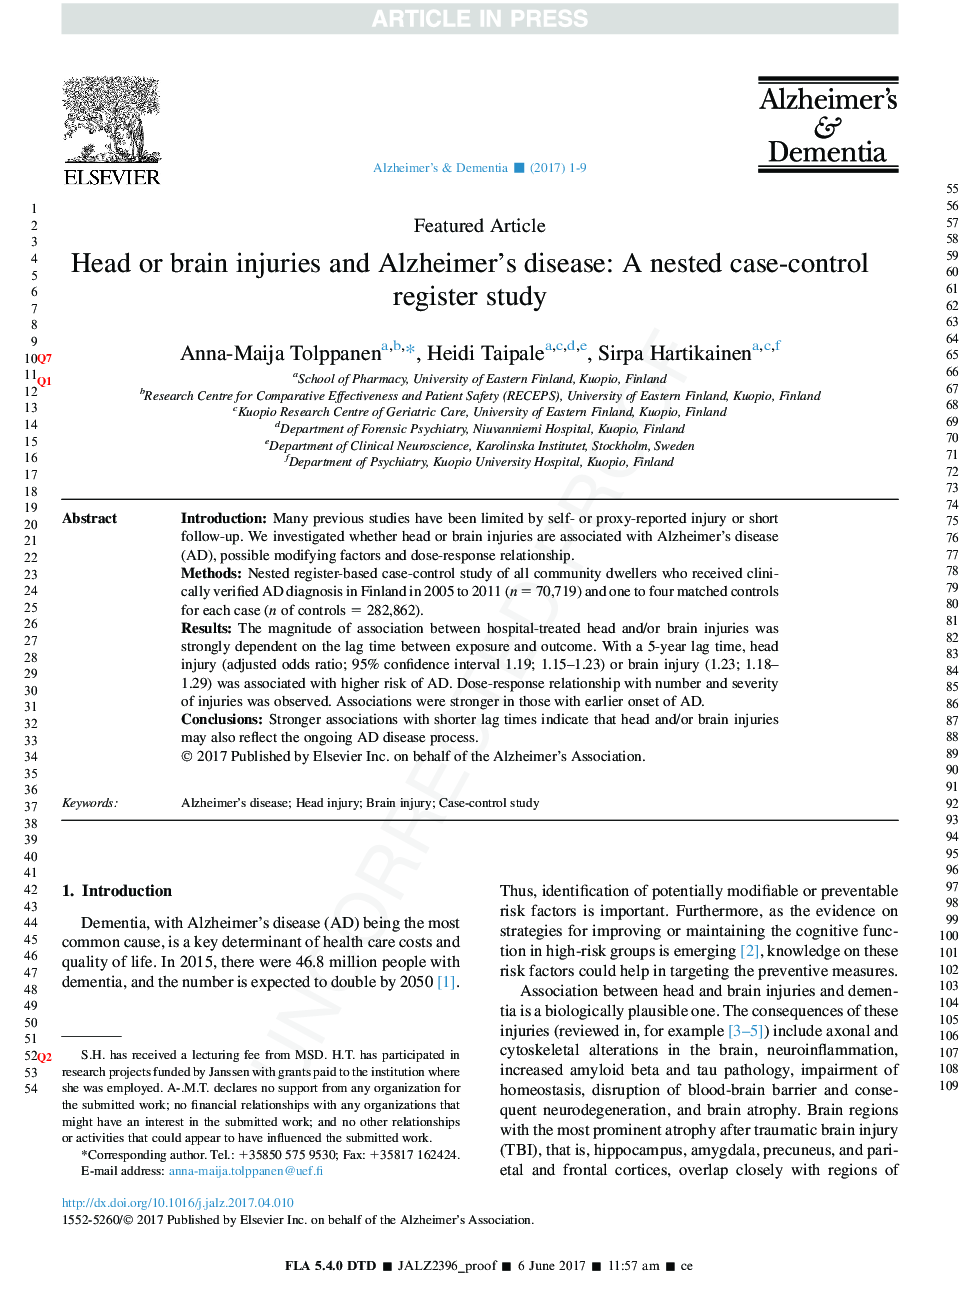 آسیب های سر و یا مغز و بیماری آلزایمر: یک مطالعه ثبت شده در مورد موارد نادرست 